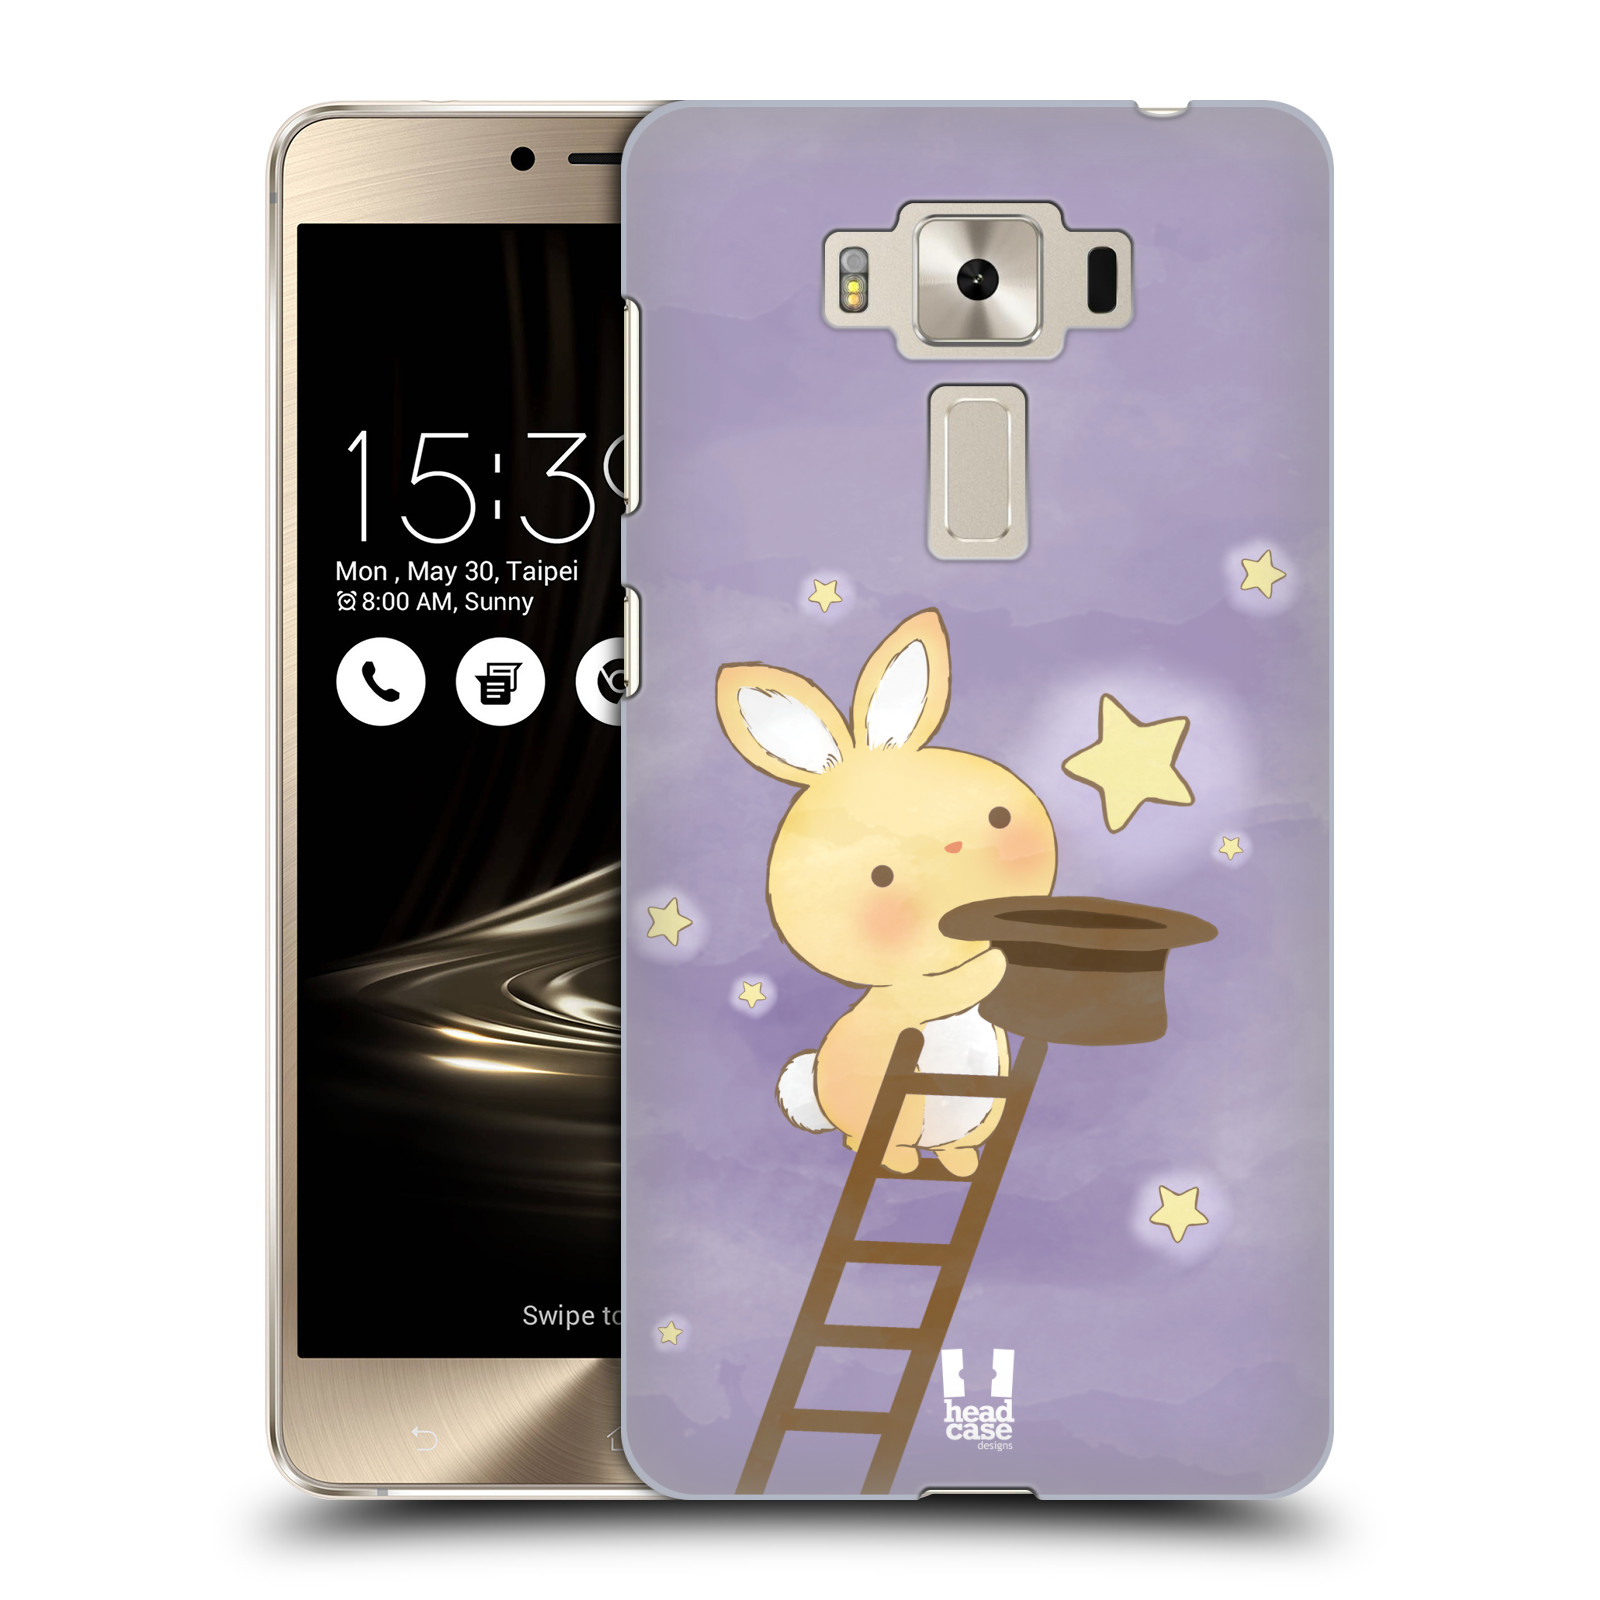 HEAD CASE plastový obal na mobil Asus Zenfone 3 DELUXE ZS550KL vzor králíček a hvězdy fialová